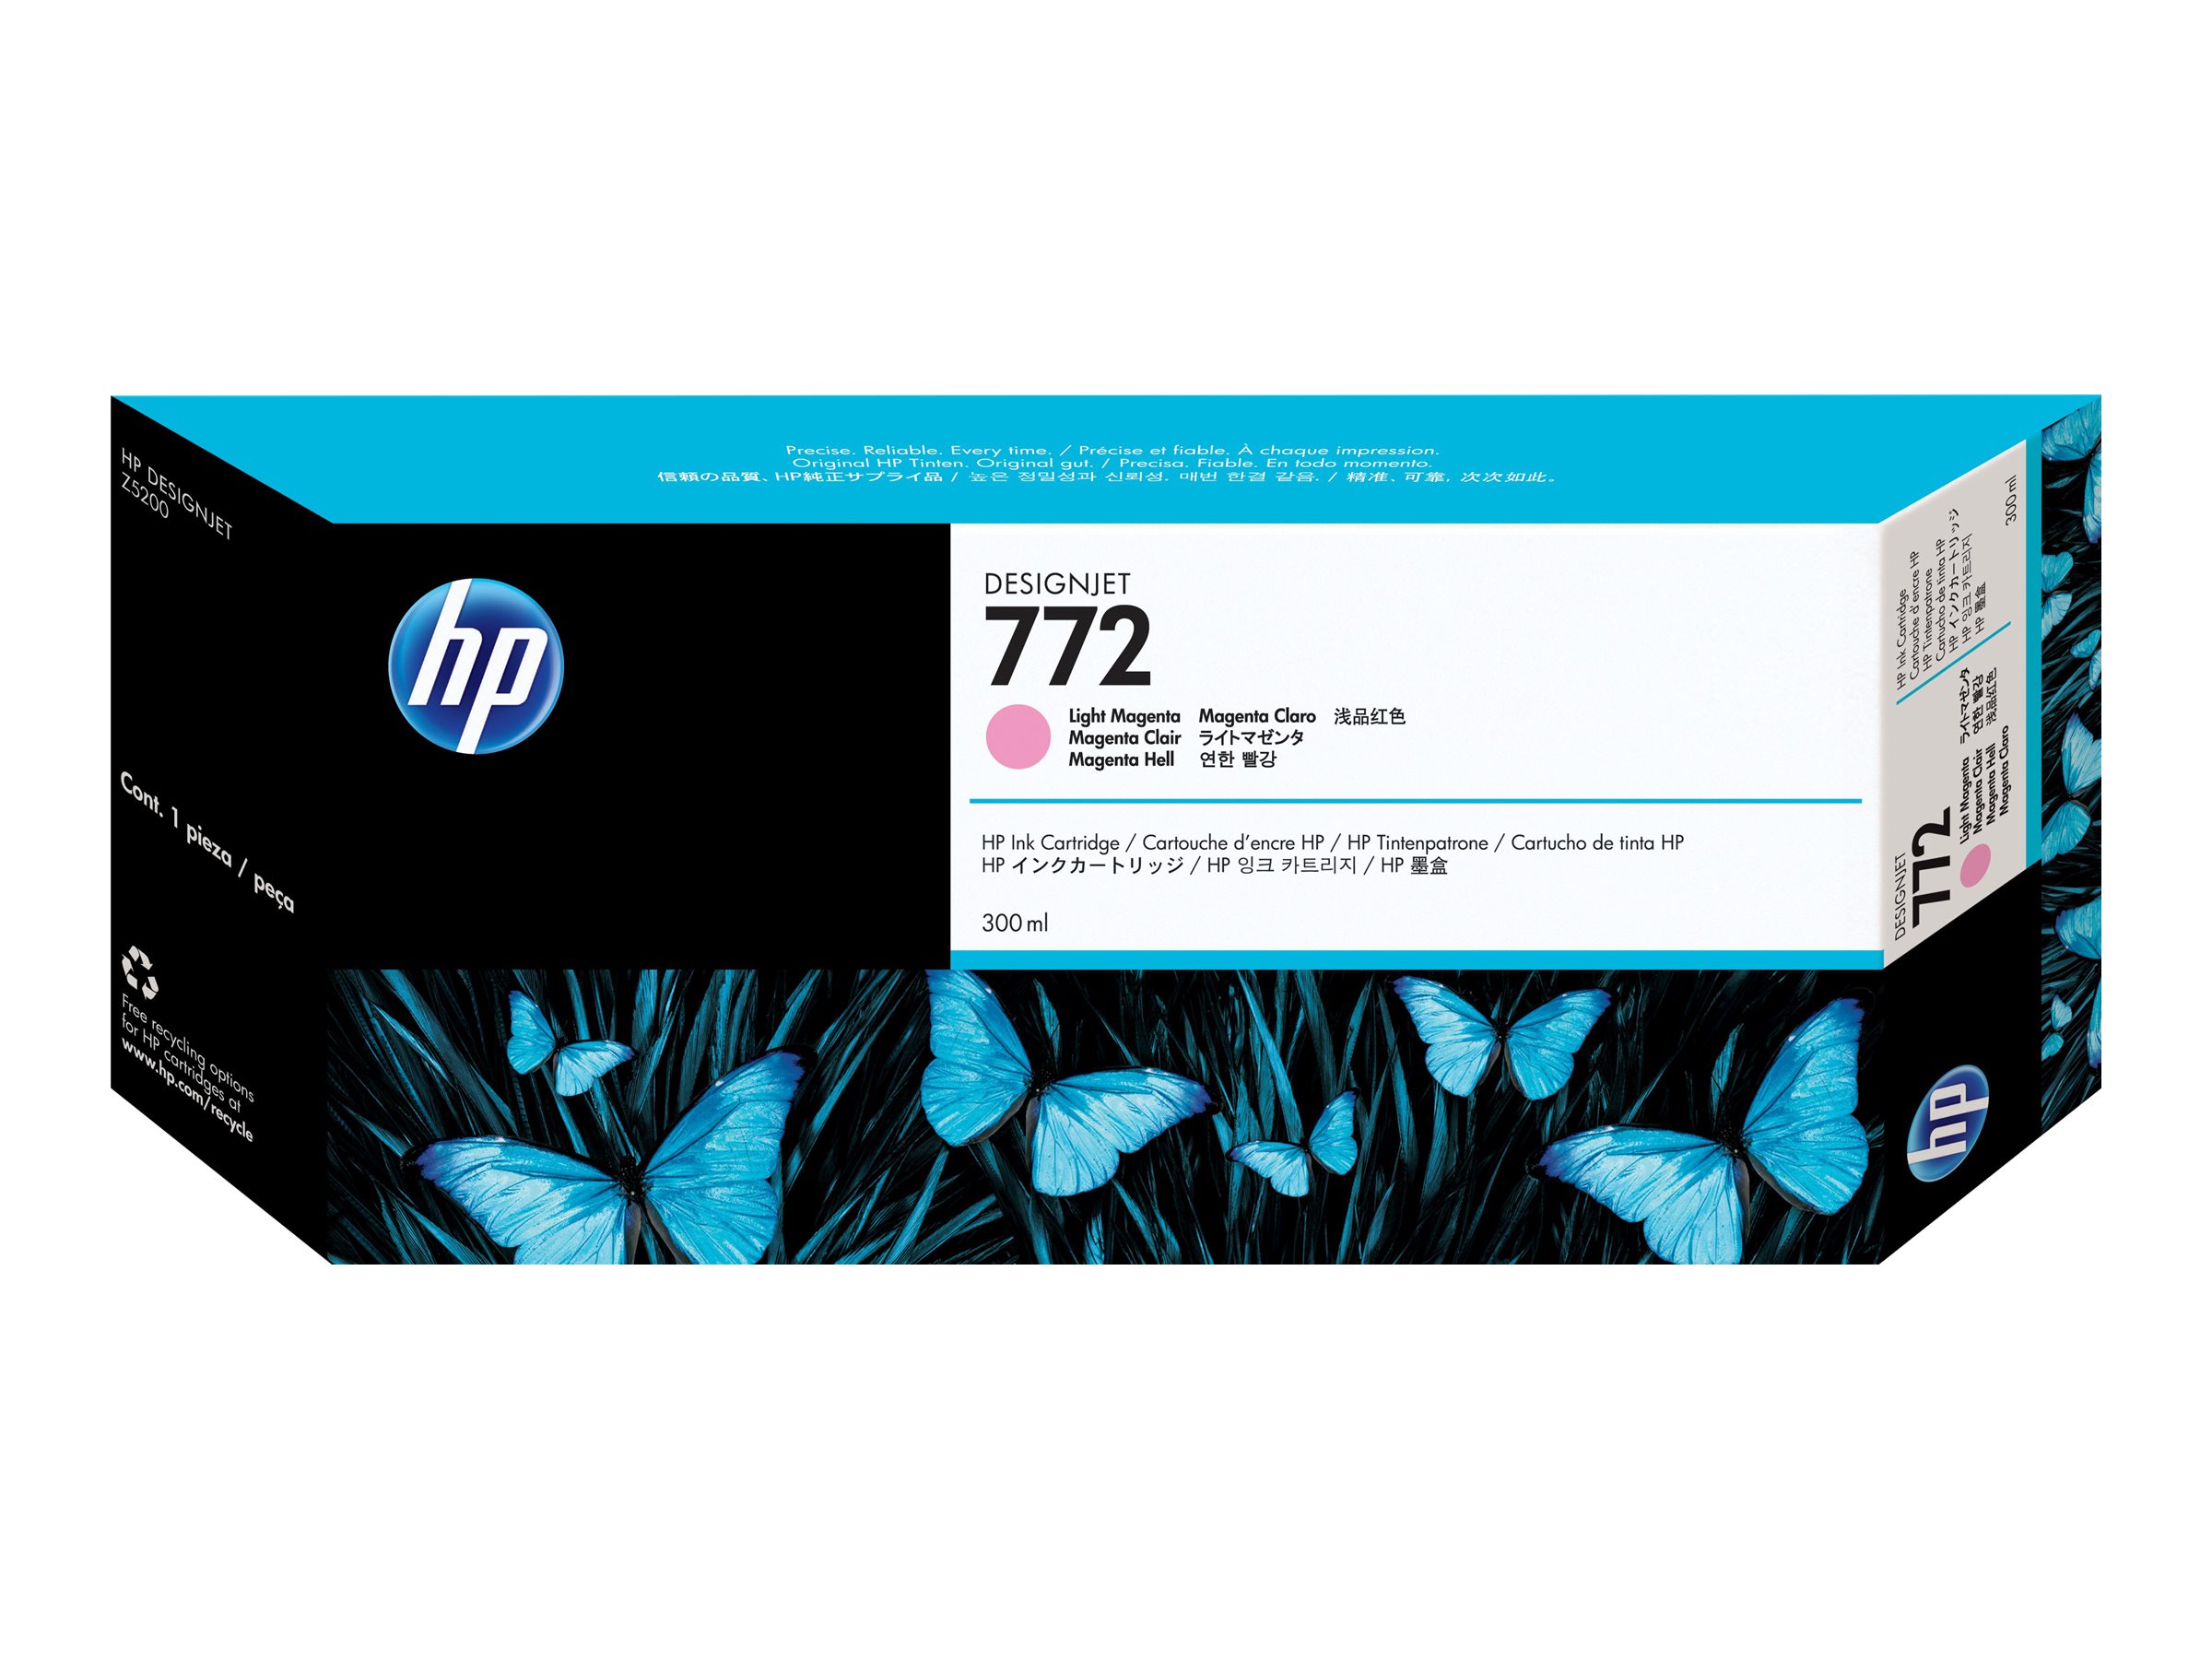 HP 772 - 300 ml - magenta clair - original - DesignJet - cartouche d'encre - pour DesignJet HD Pro MFP, Z5200, Z5200 PostScript, Z5400 PostScript ePrinter - CN631A - Cartouches d'imprimante